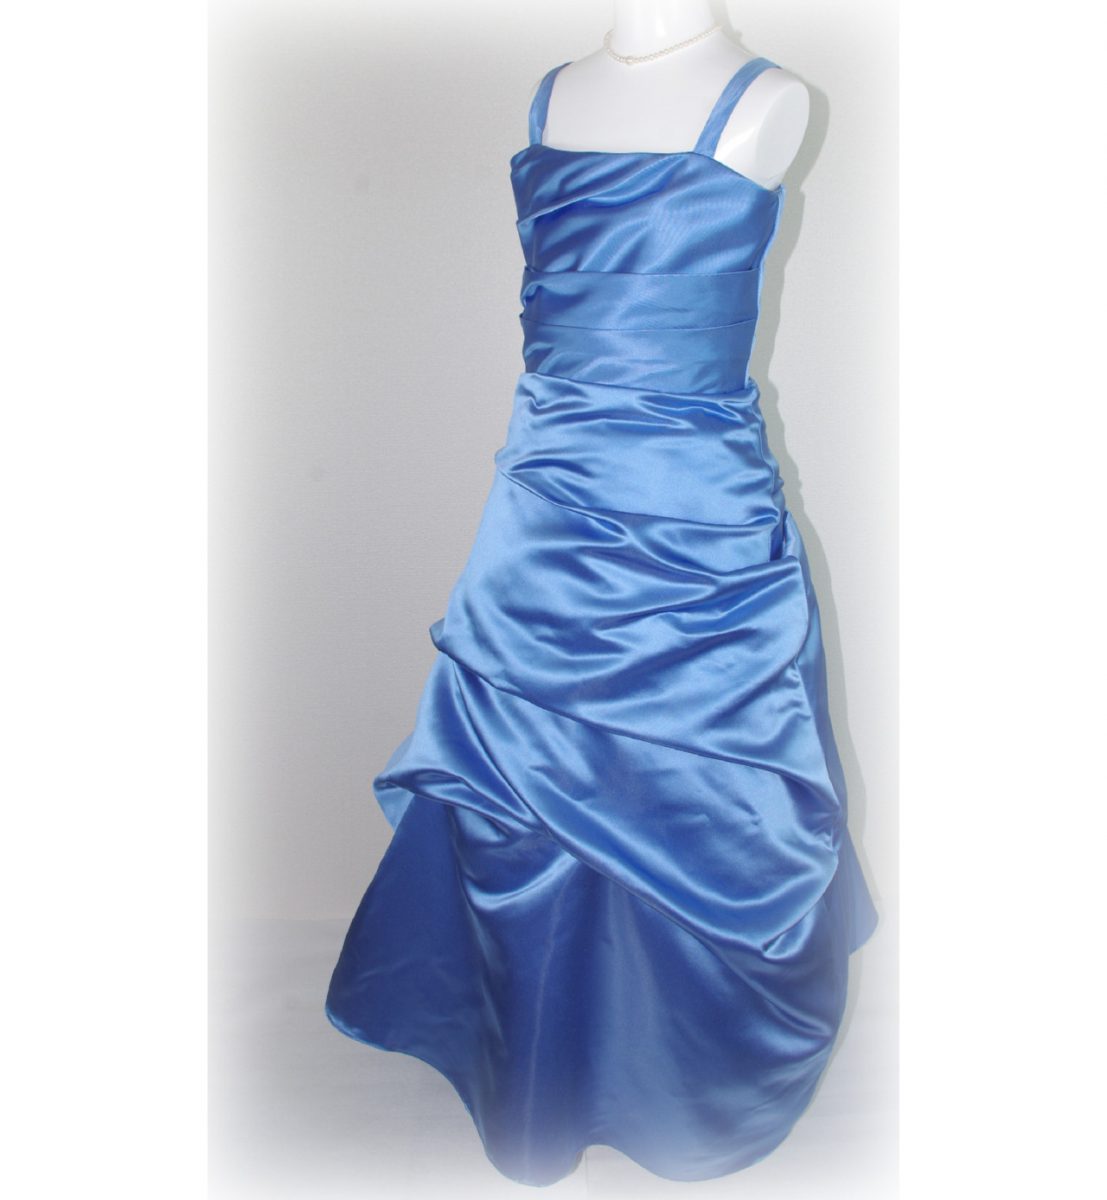 子供ドレス「ロイズ」ノーブル・ブルー J8005-1